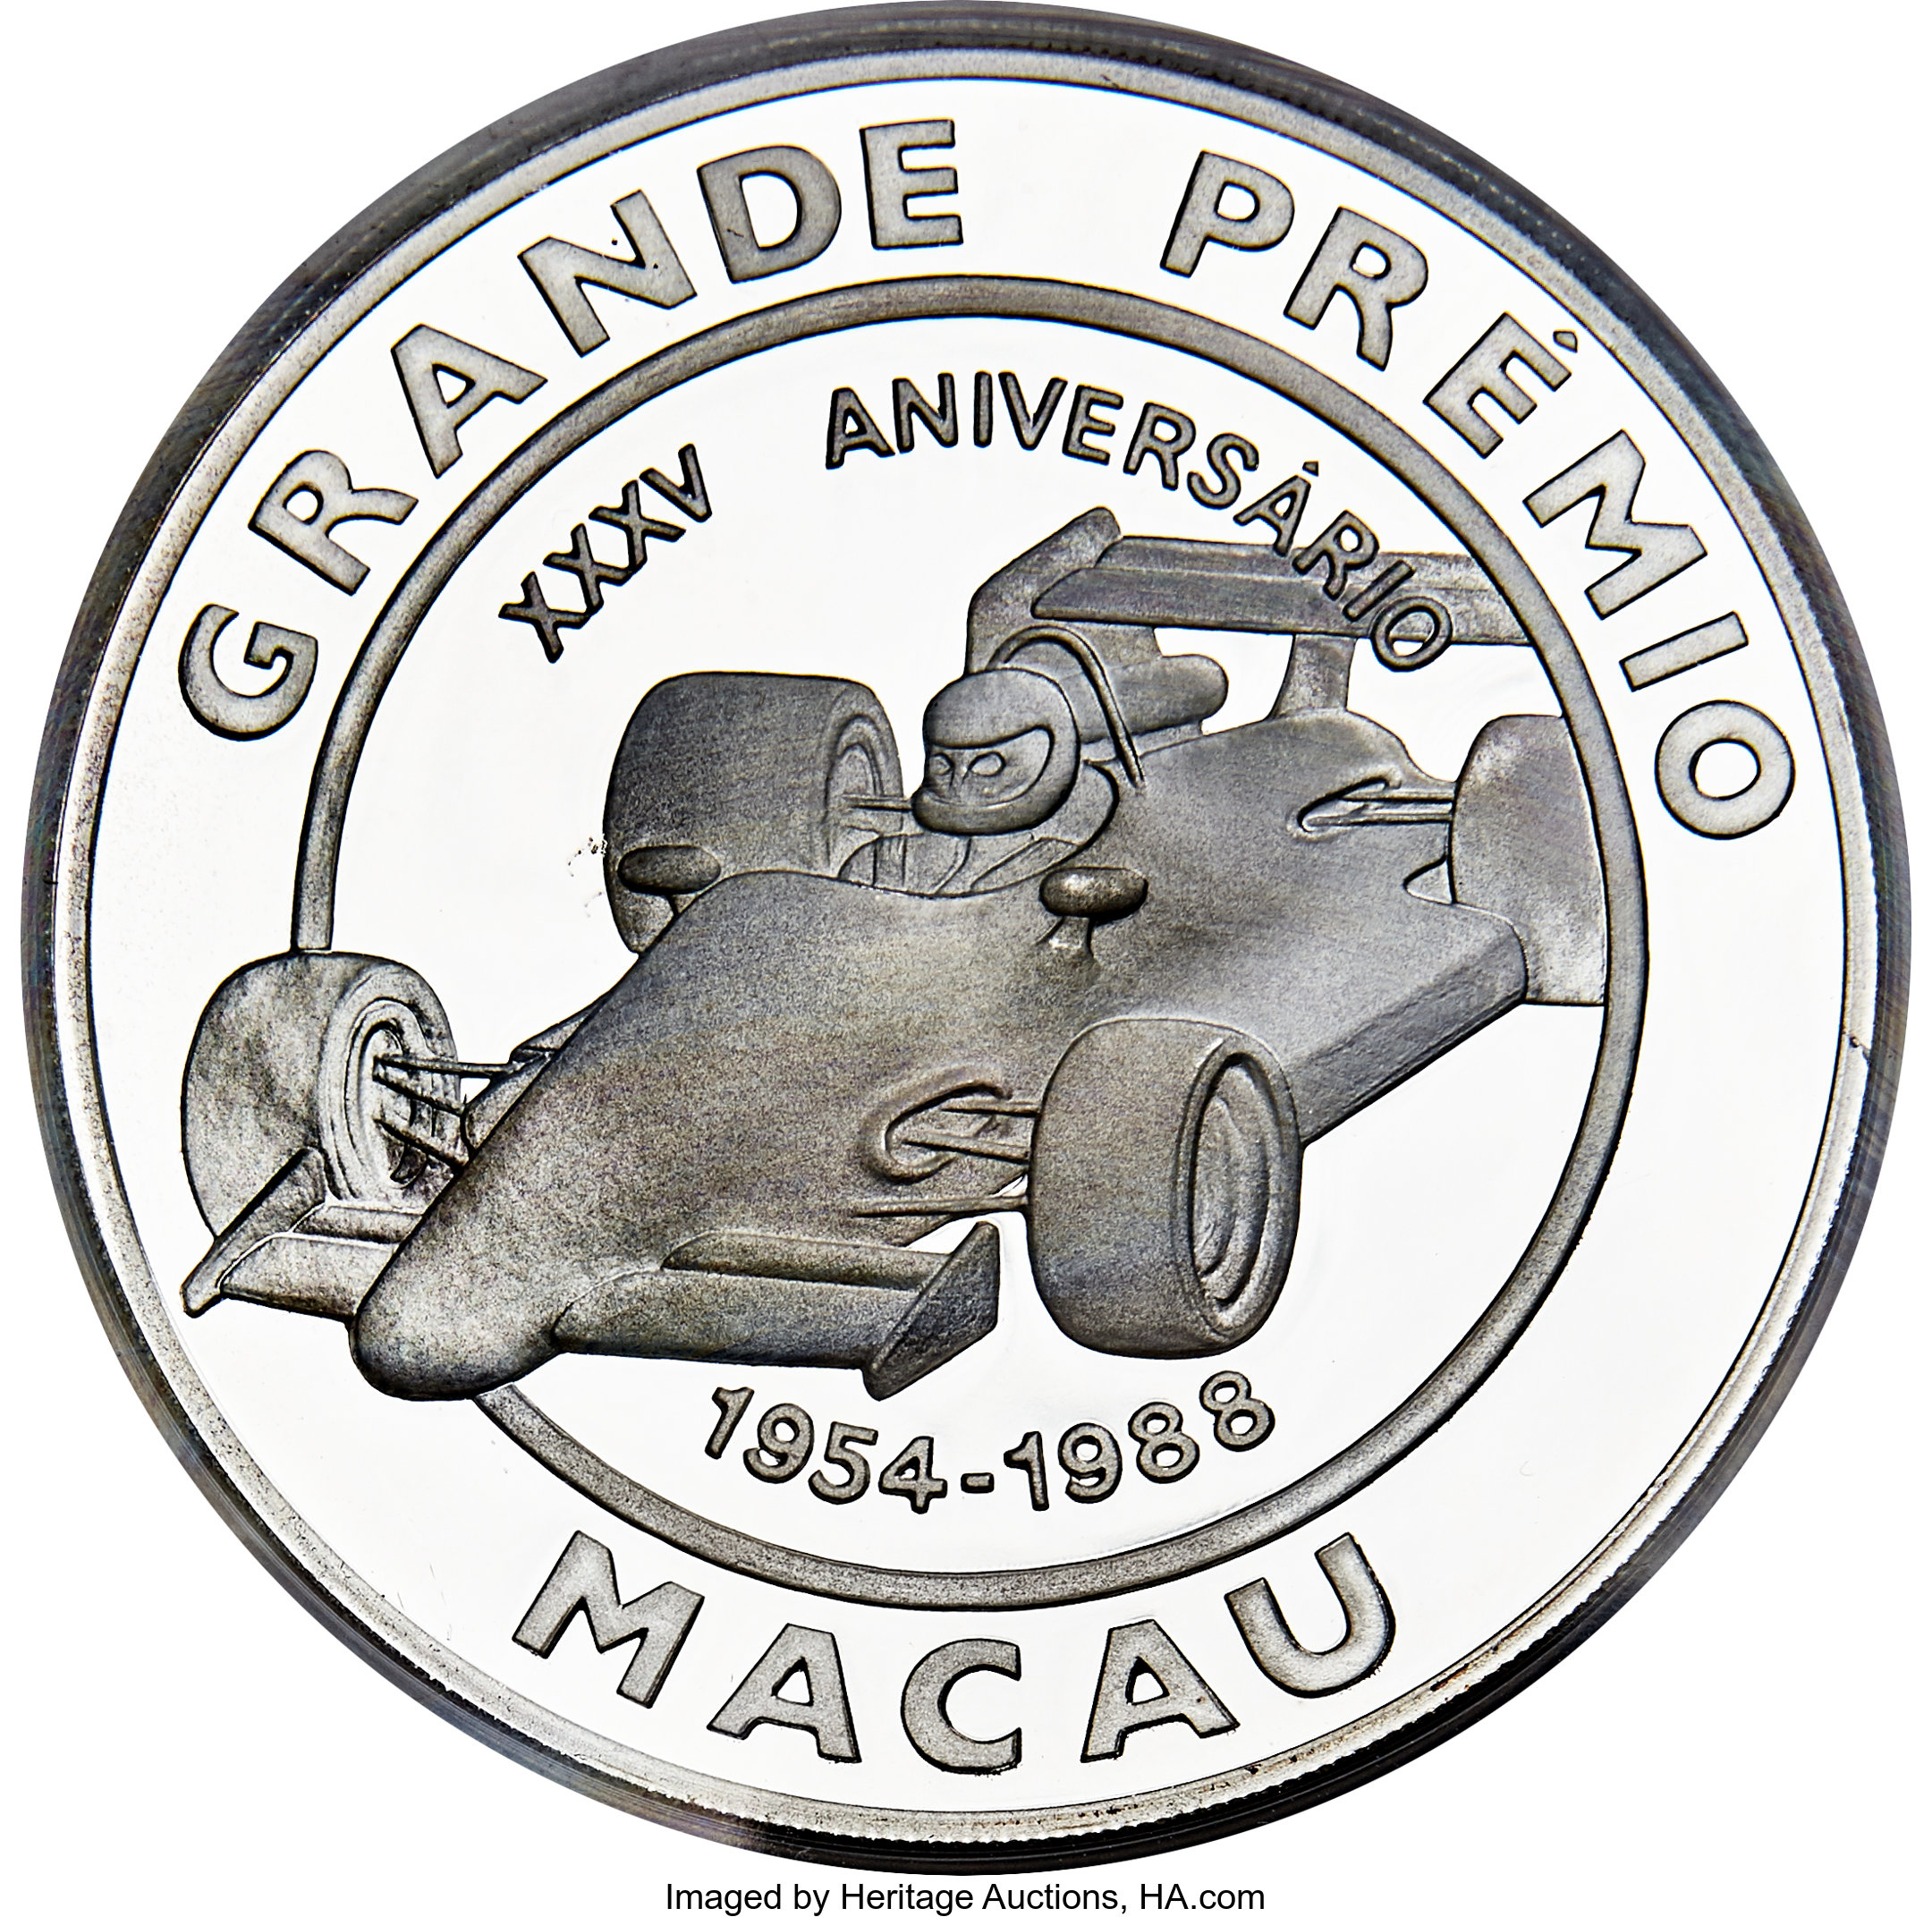 10000 patacas - Grand Prix de Macao - 35 years